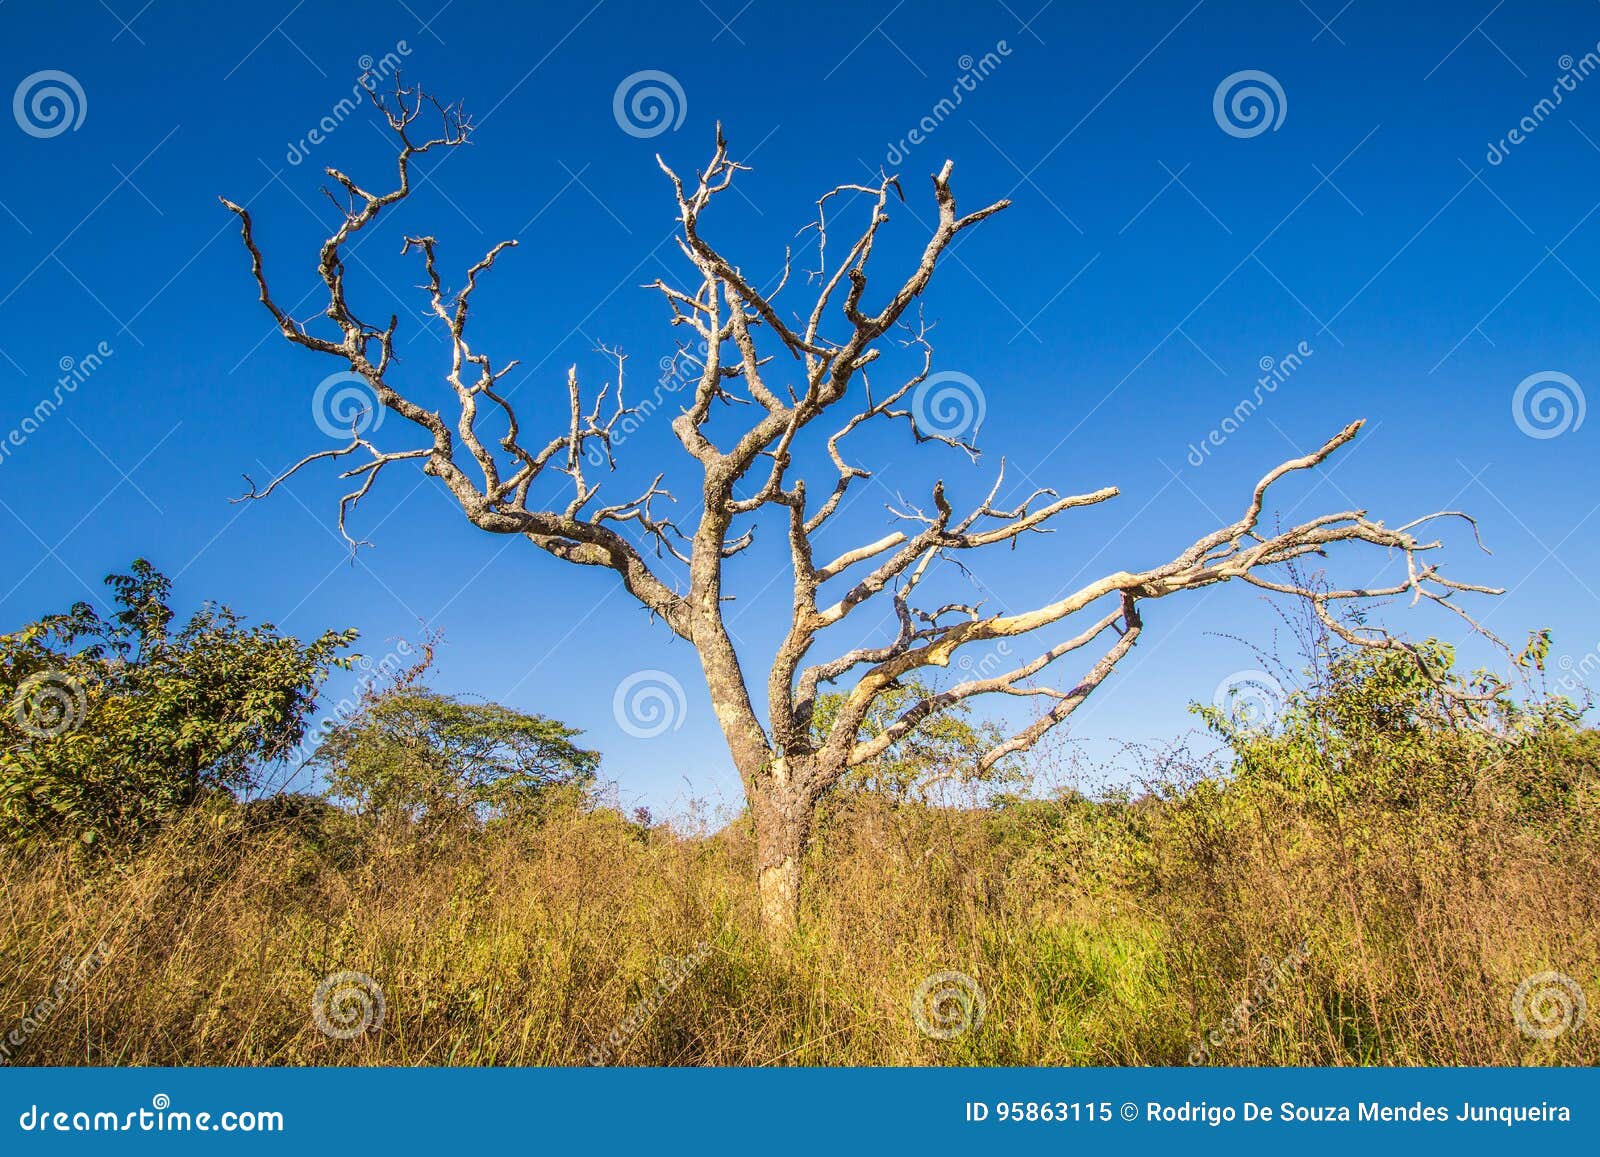 leafless tree in cerrado, pirenopolis